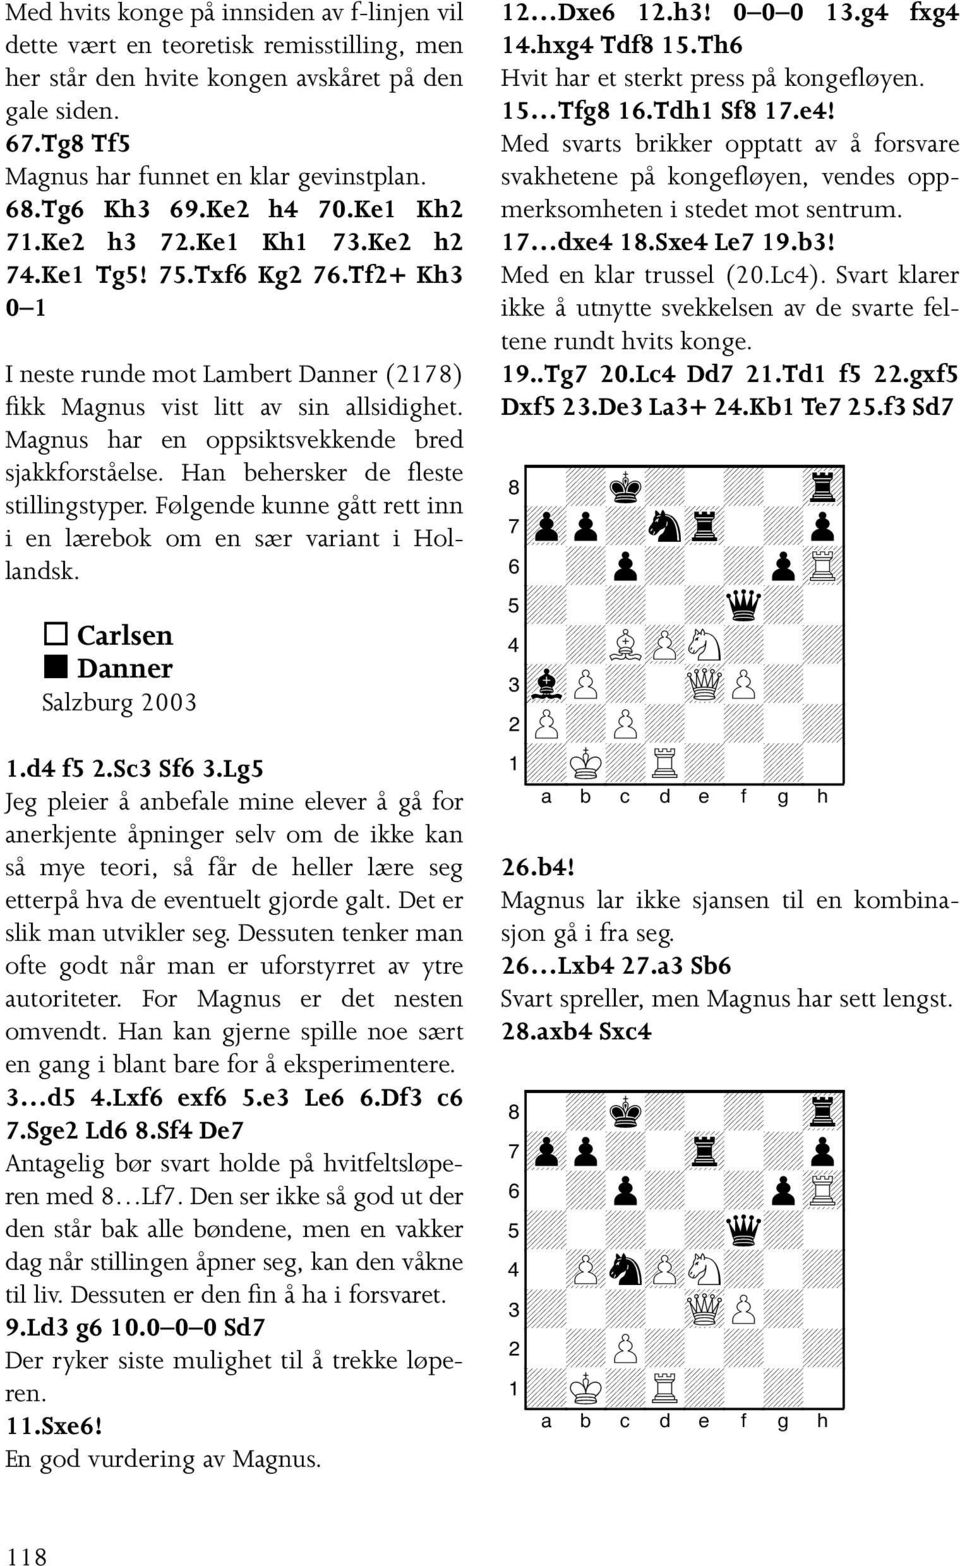 Magnus har en oppsiktsvekkende bred sjakkforståelse. Han behersker de fleste stillingstyper. Følgende kunne gått rett inn i en lærebok om en sær variant i Hollandsk. Carlsen Danner Salzburg 2003 1.